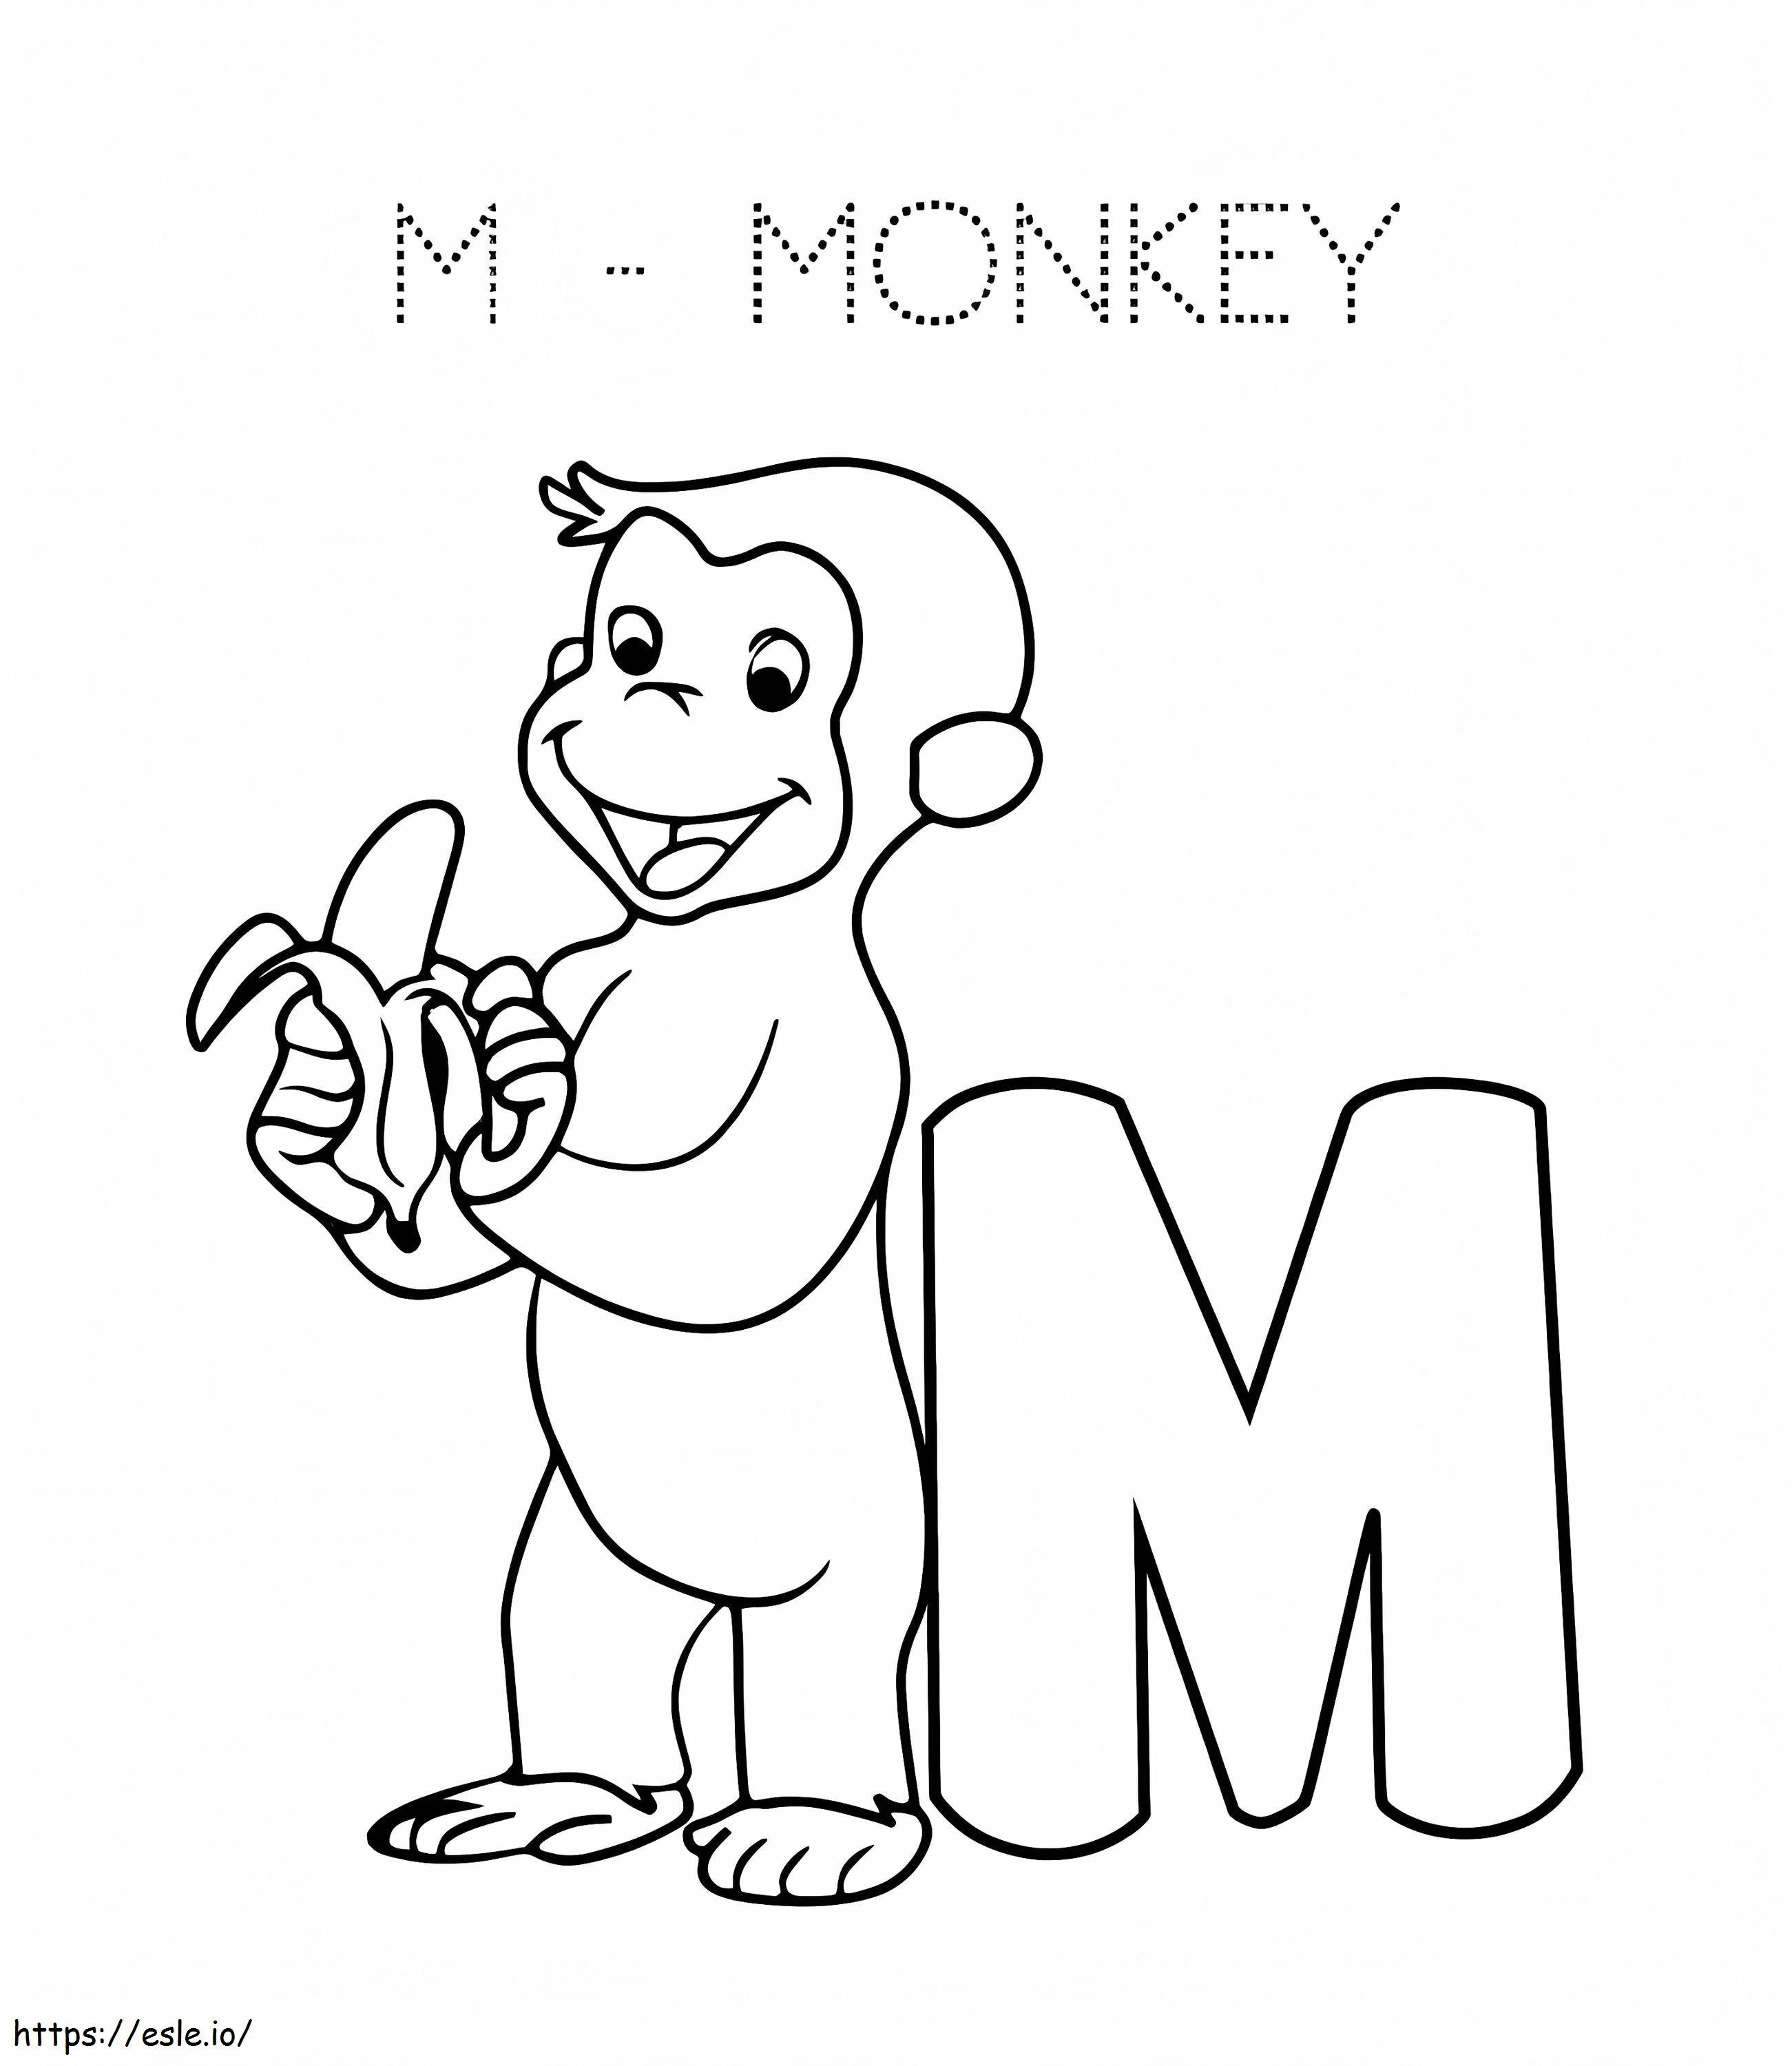 猿の文字 M ぬりえ - 塗り絵